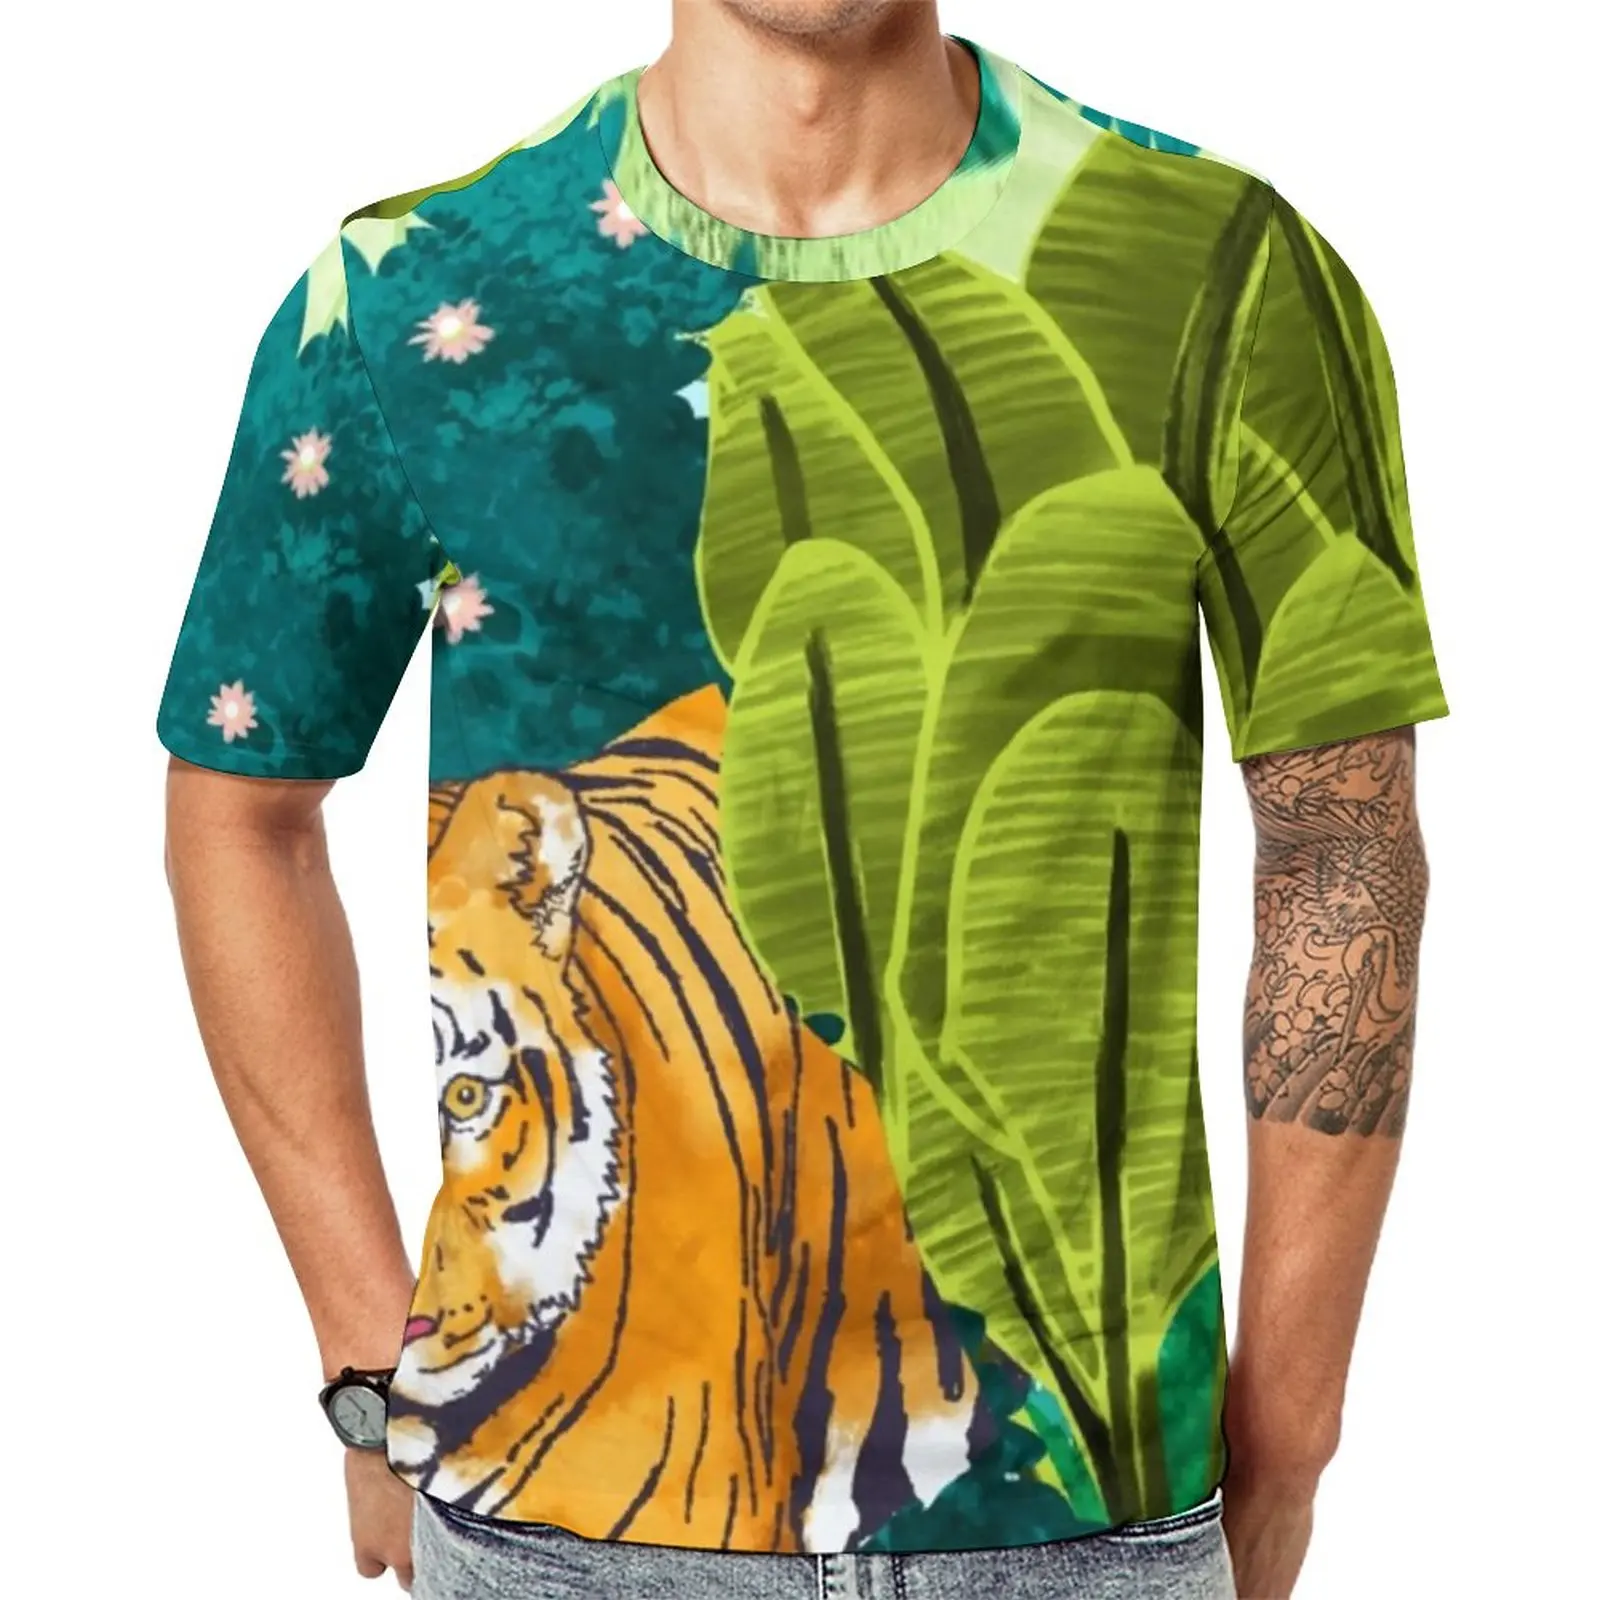 

Футболка с изображением джунглей и тигра, мужские футболки в стиле хиппи с изображением диких животных, Оригинальная футболка с коротким рукавом, забавная Одежда большого размера, идея для подарка